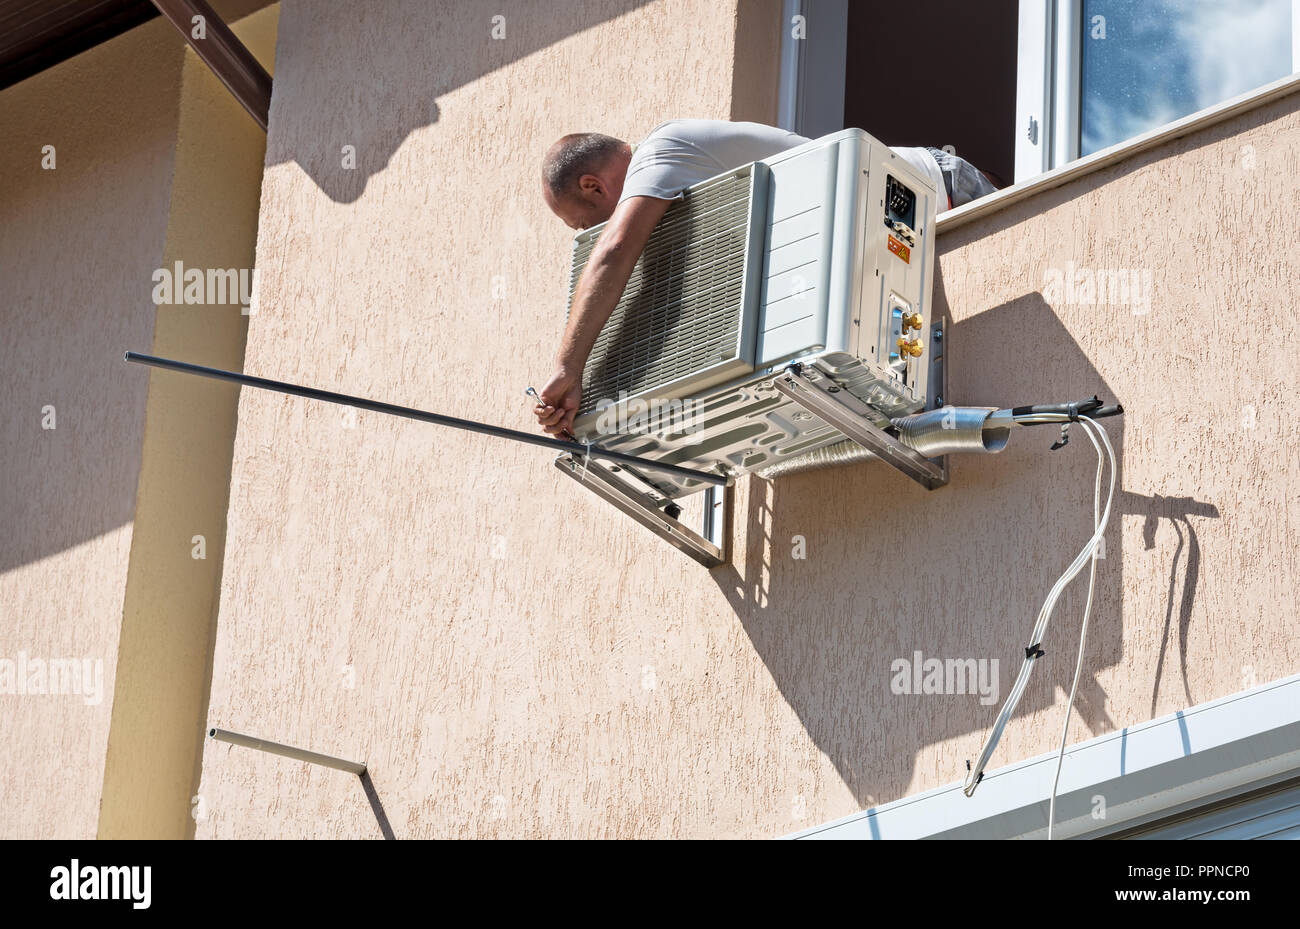 Klimaanlage Outdoor Unit Kompressor montieren außerhalb des Hauses  Stockfotografie - Alamy